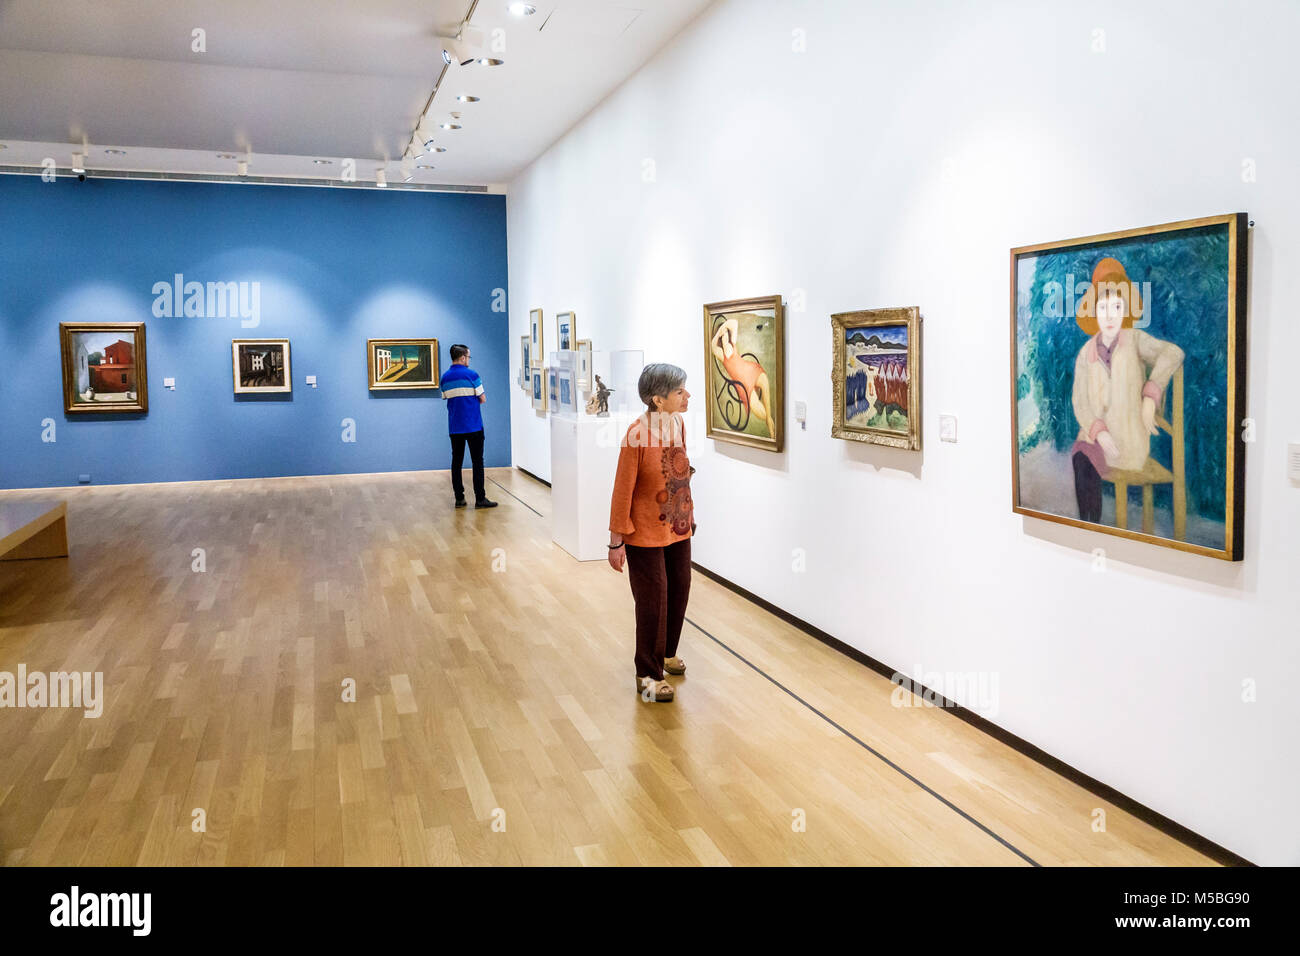 Buenos Aires Argentinien,Recoleta,Museo Nacional de Bellas Artes Nationalmuseum der Schönen Künste,innen Galerie Gemälde Frau weiblich suchen Stockfoto